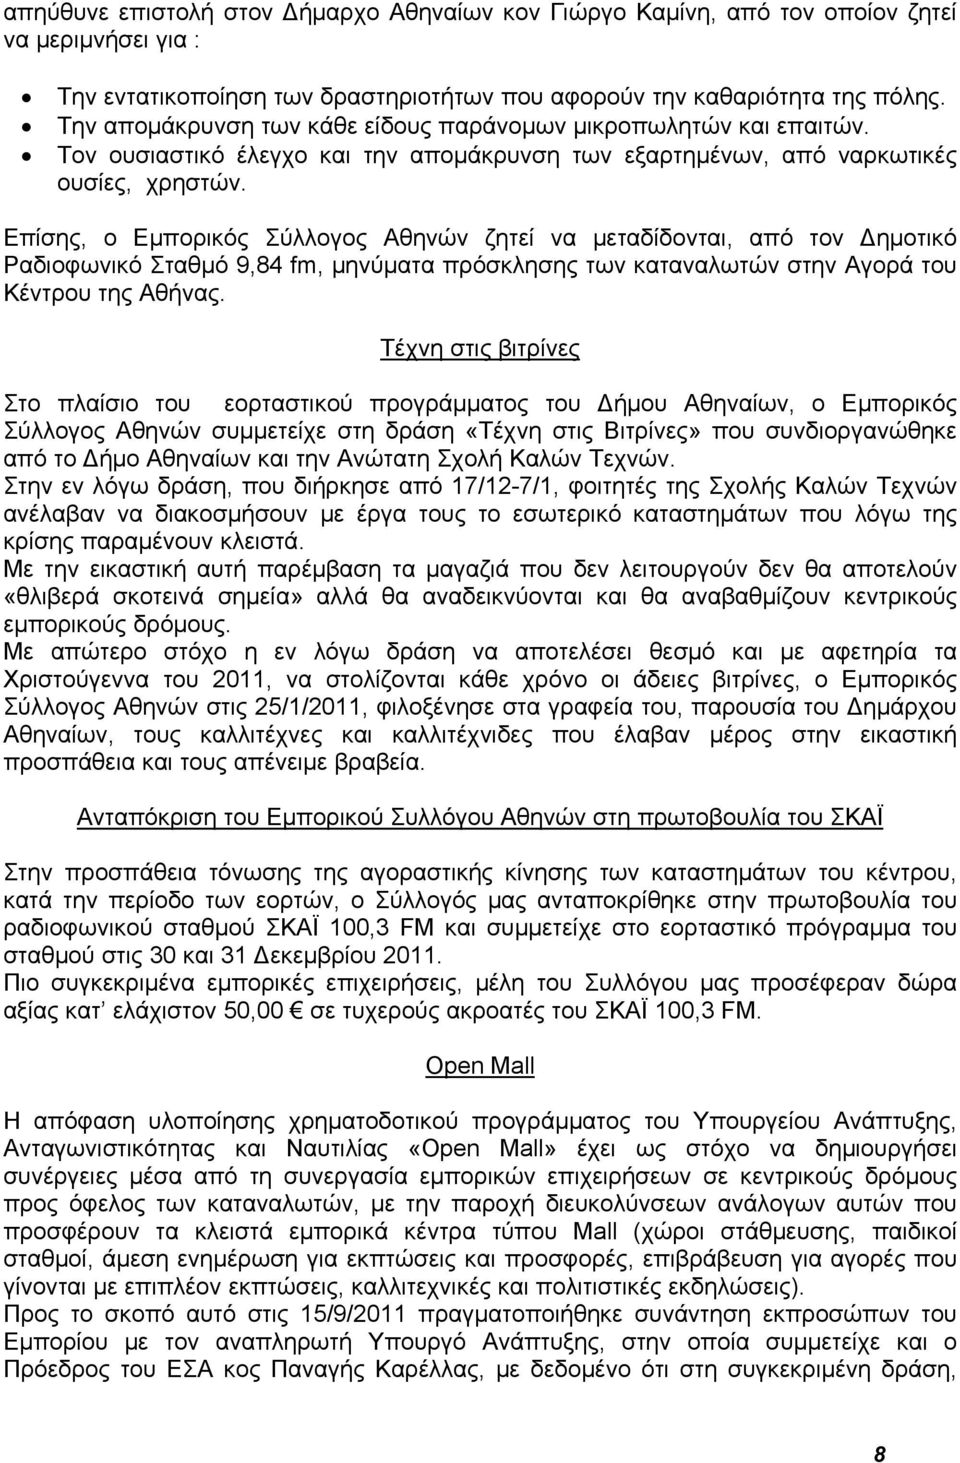 Επίσης, ο Εμπορικός Σύλλογος Αθηνών ζητεί να μεταδίδονται, από τον Δημοτικό Ραδιοφωνικό Σταθμό 9,84 fm, μηνύματα πρόσκλησης των καταναλωτών στην Αγορά του Κέντρου της Αθήνας.